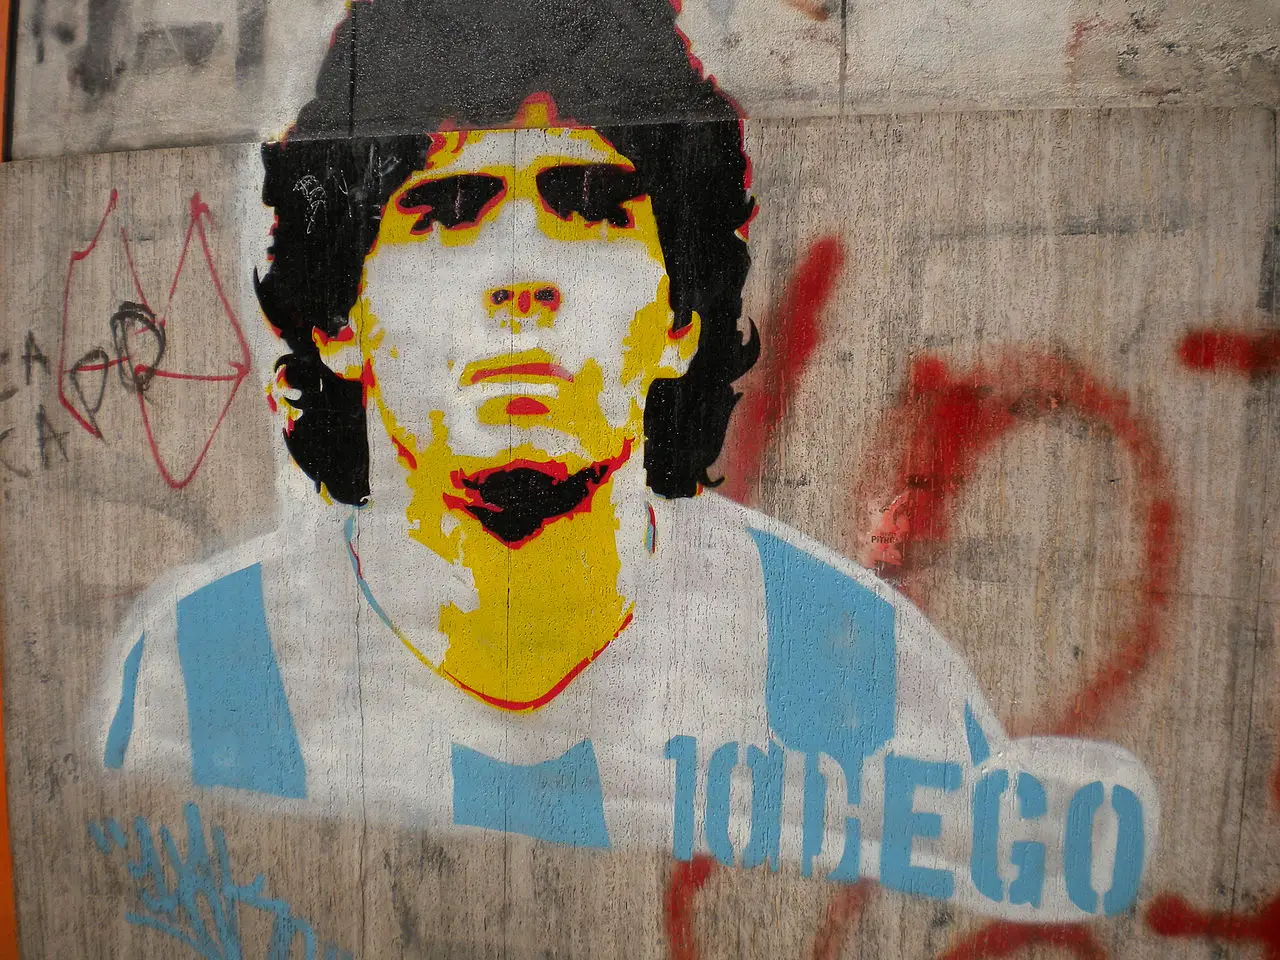 qu'est-ce qui a causé la mort de Maradona